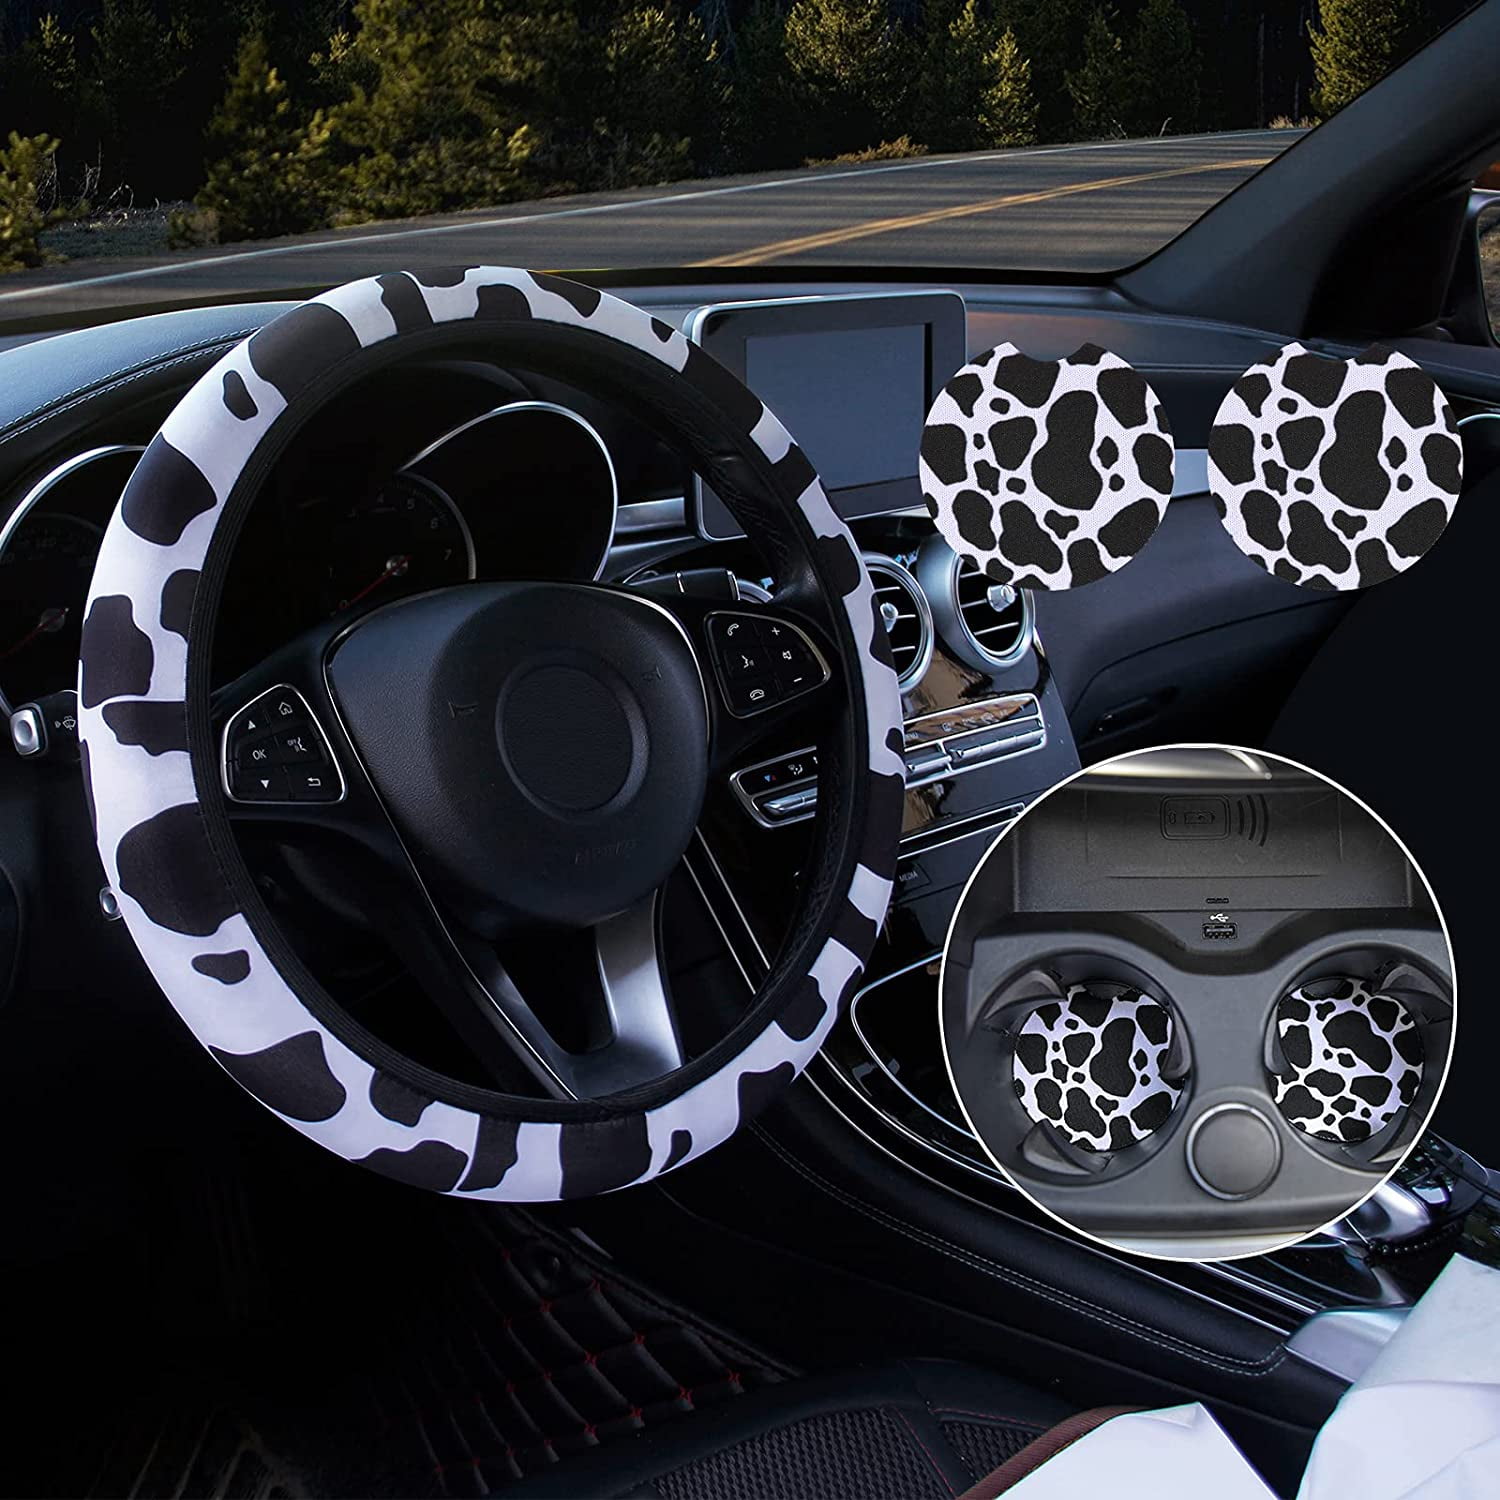 2pcs Couvre Volant Style Fibre de Carbone Rouge Steering Wheel